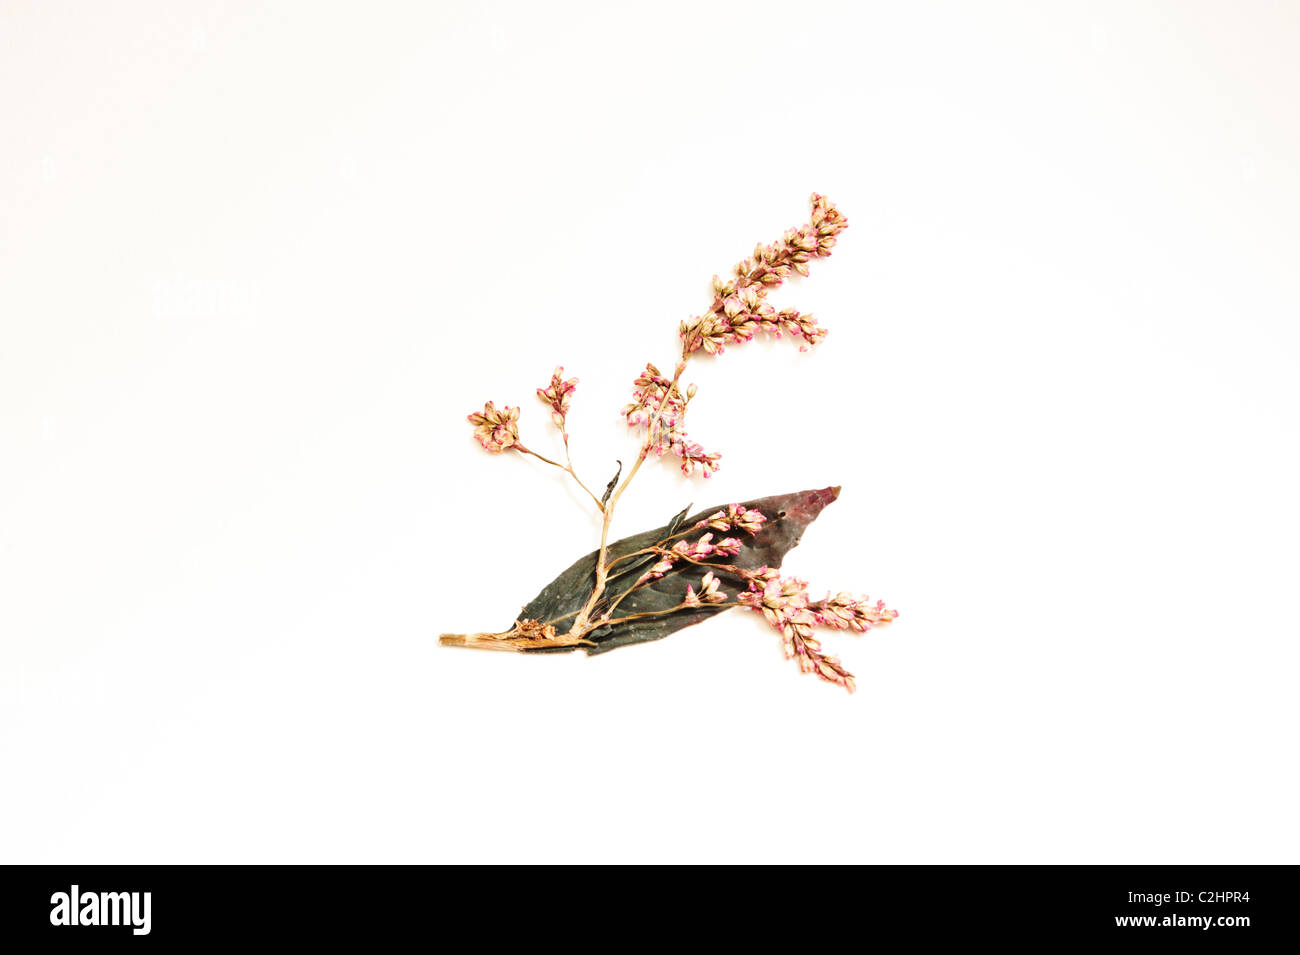 Eine gepresste japanische Indigo (Polygonum Tinctorum) Blume und Blatt auf einem weißen Hintergrund. Stockfoto